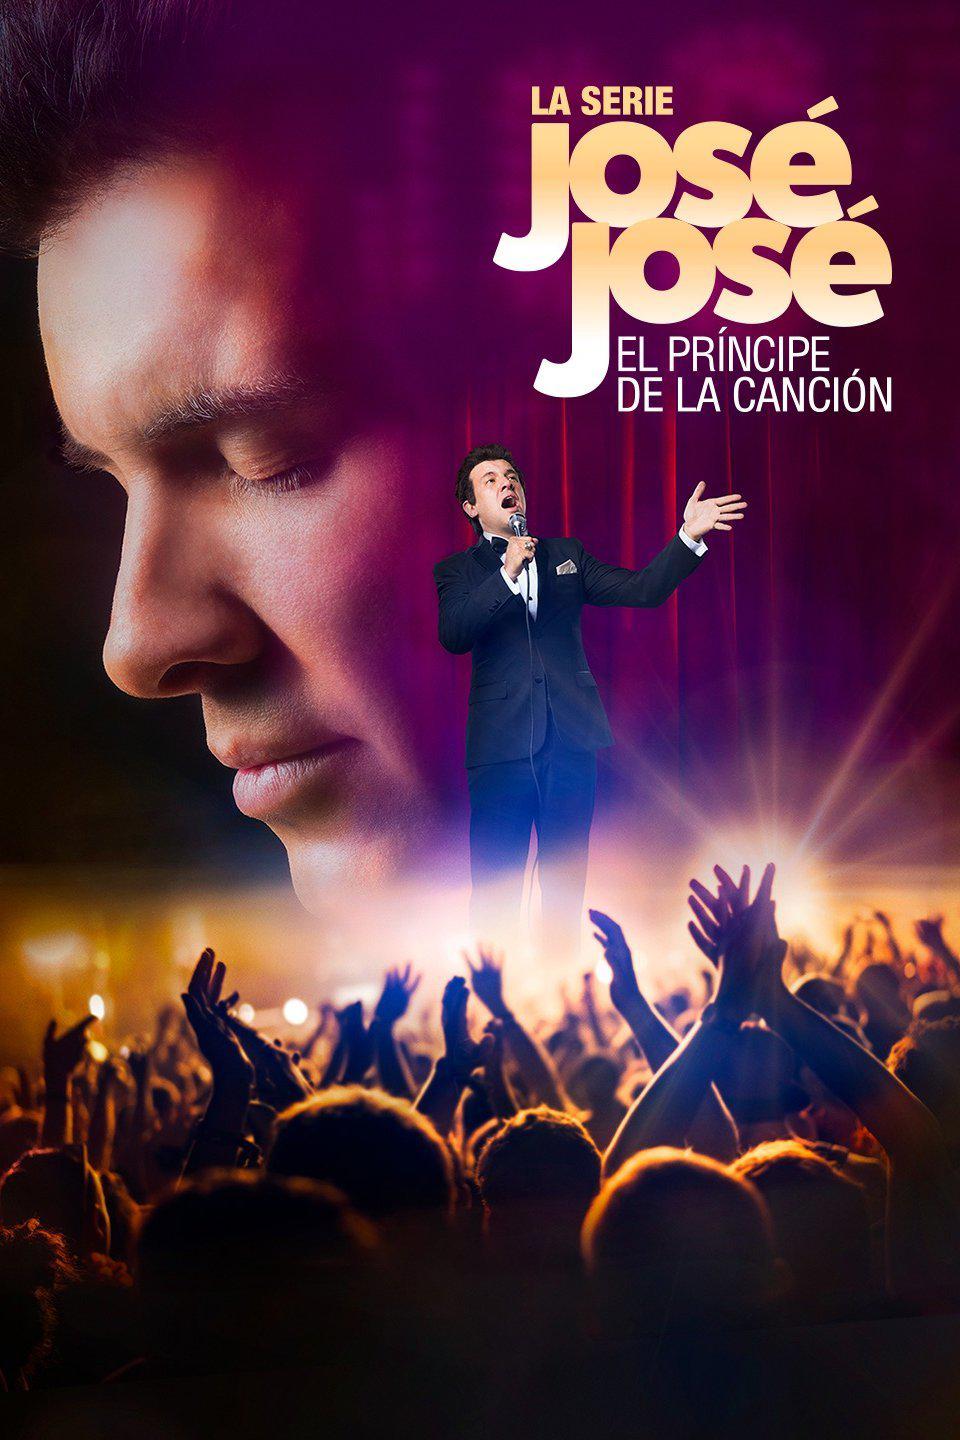 TV ratings for José José, El Príncipe De La Canción in the United States. Telemundo TV series